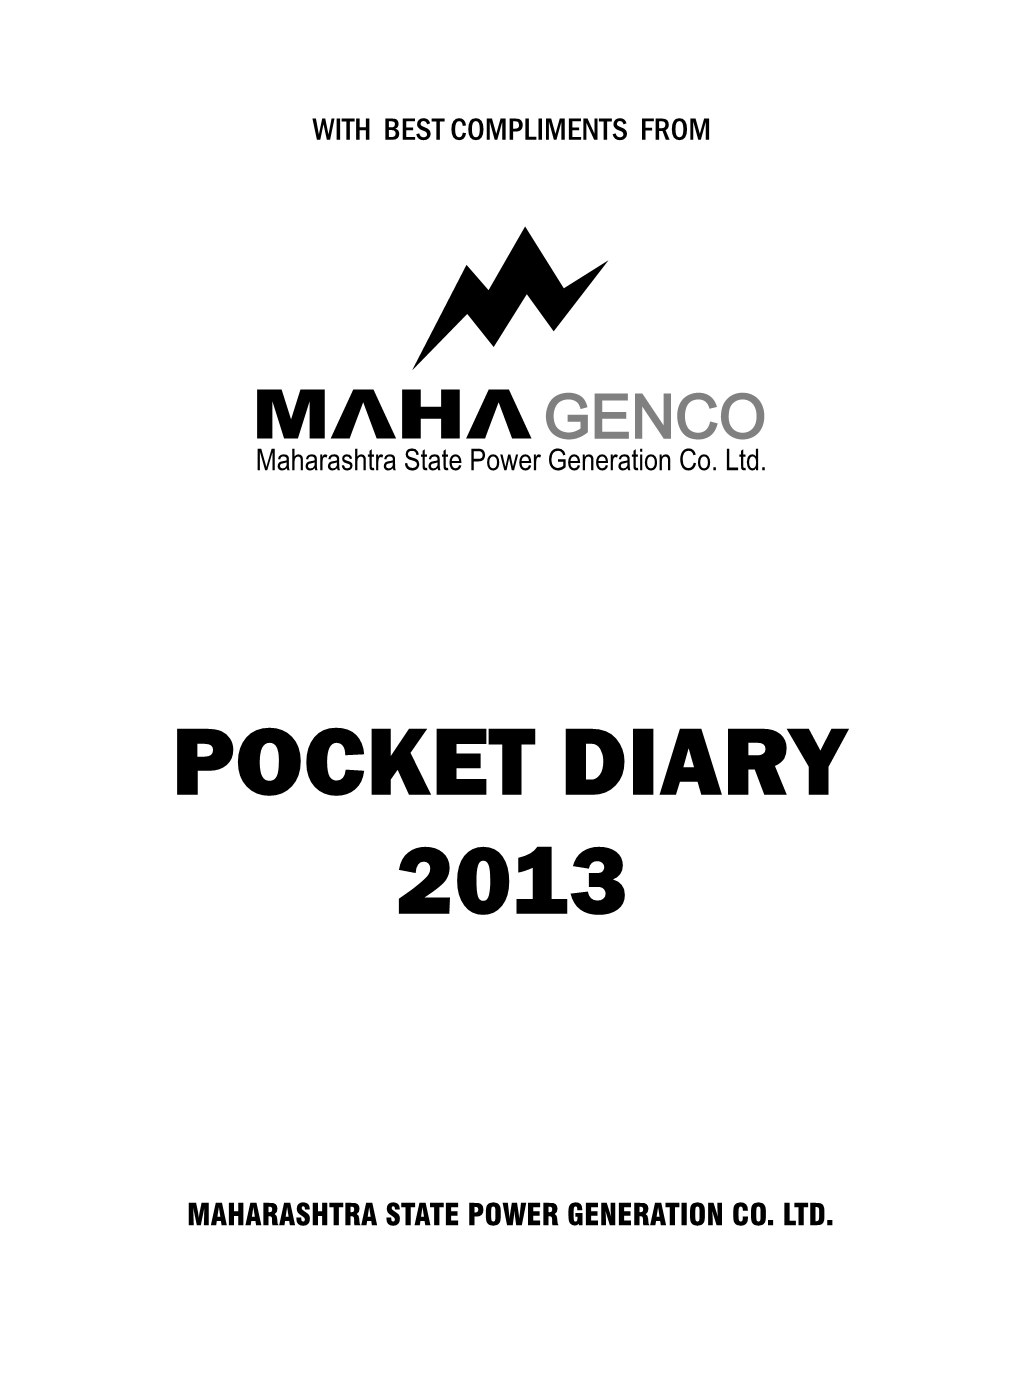 Pocket Diary 2013